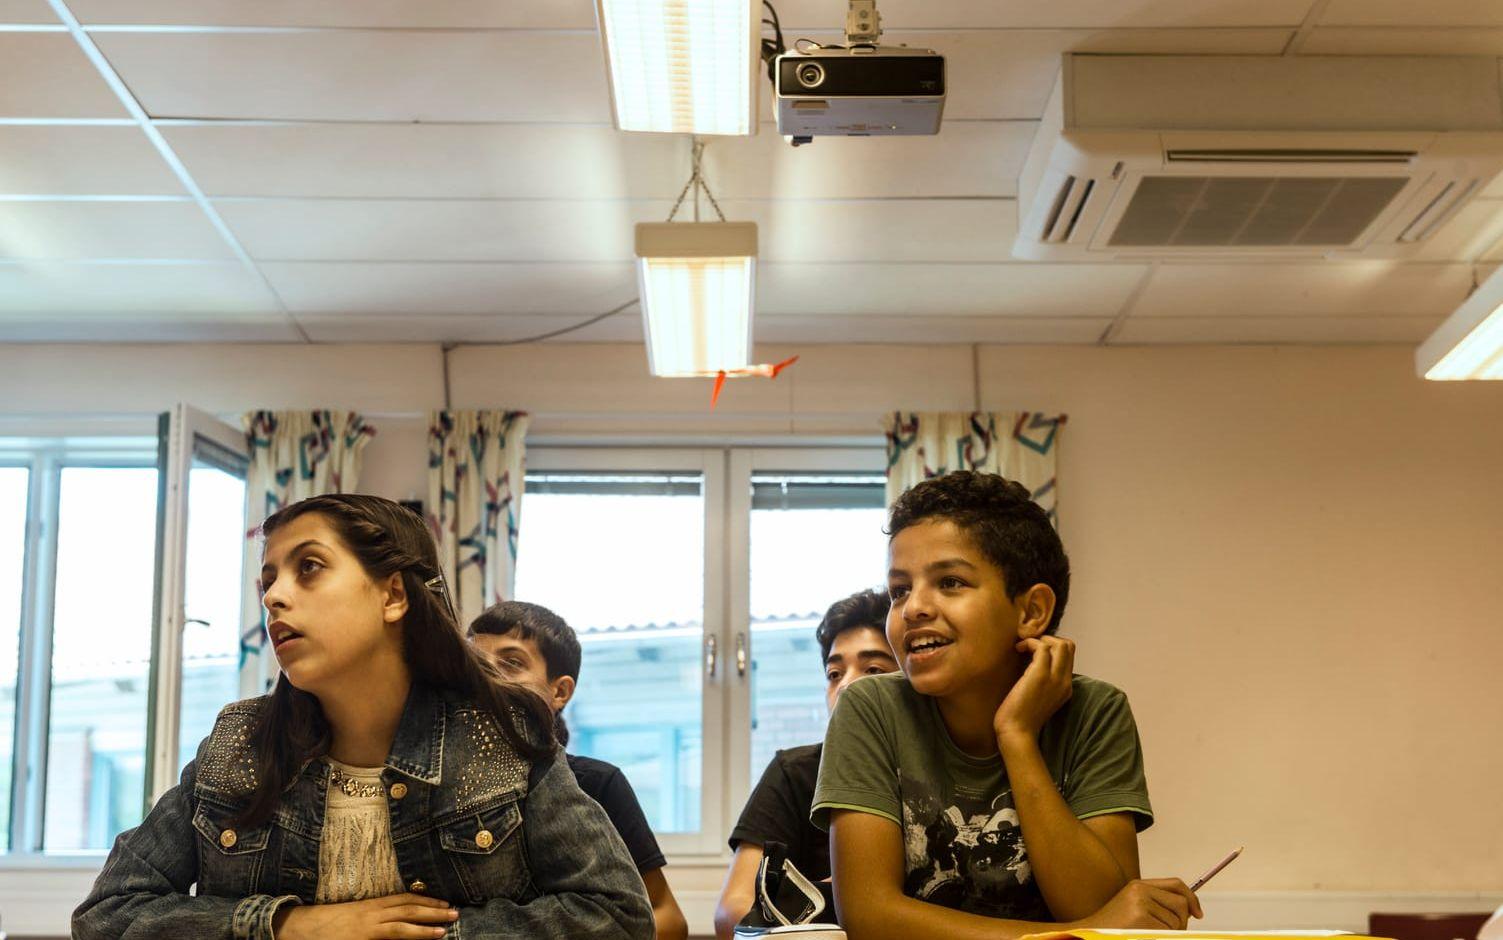 Från vänster: Bayan Hamad, 11, och Hazaifa Hamad, 13, lär sig böja adjektiv på svenska lektionen.